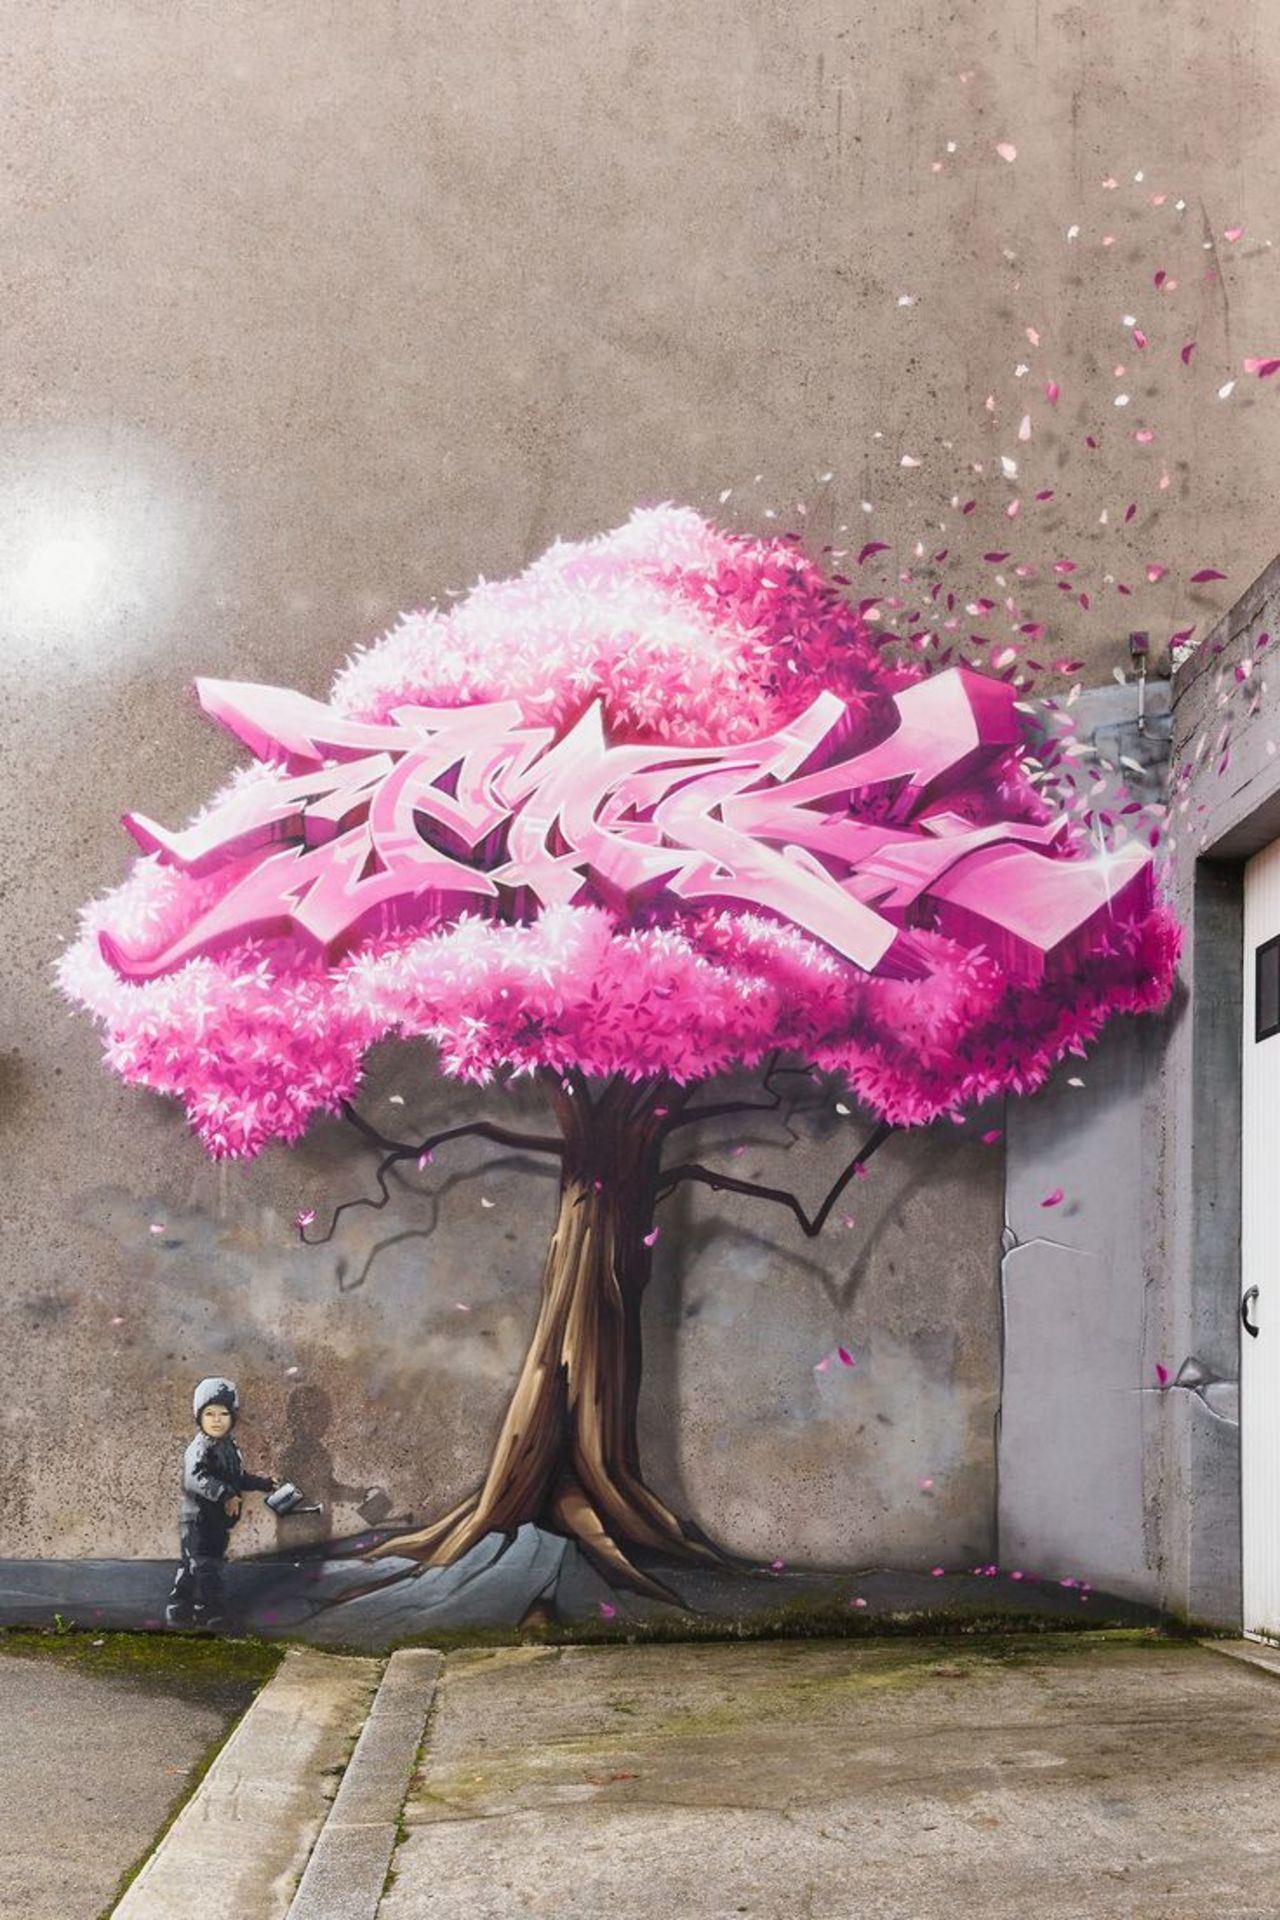 #Streetart #urbanart #graffiti #mural de l'artiste Yann Metivier aka PakOne - Brest #Bretagne https://t.co/EZV7TErIYD